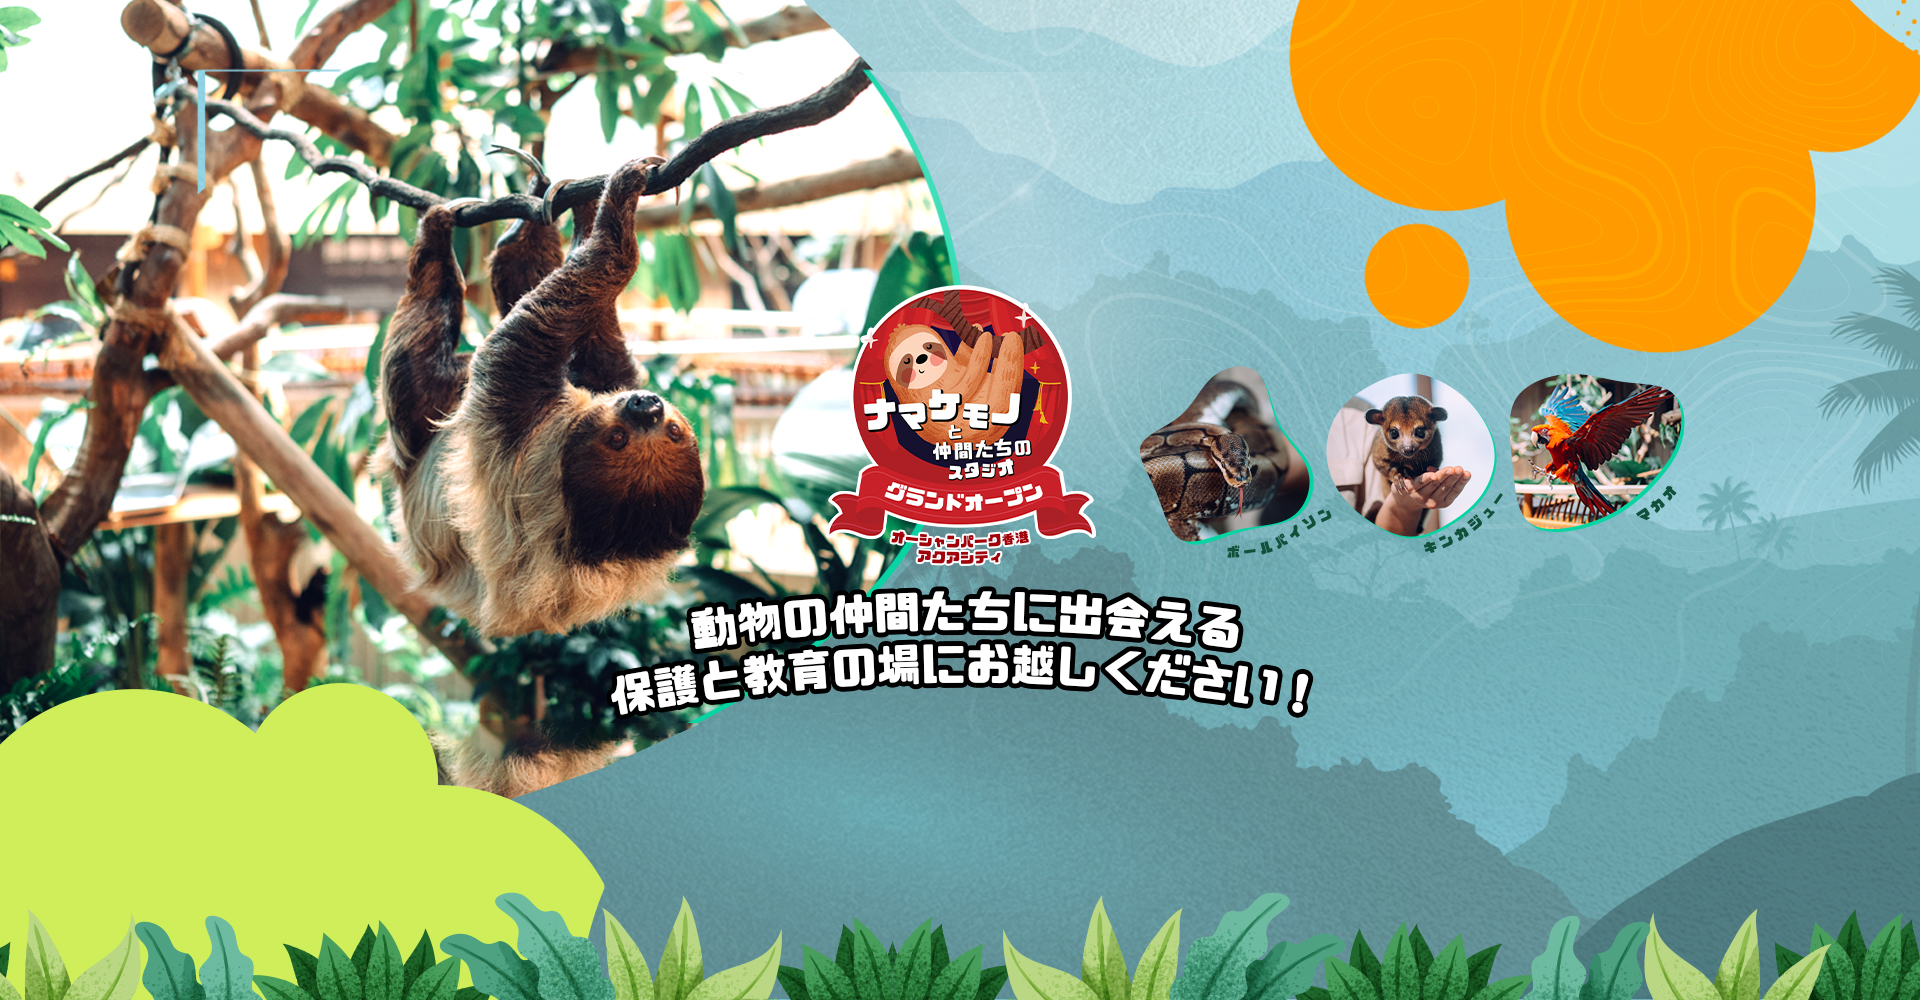 http://media.oceanpark.com.hk/files/s3fs-public/op-sloth-friends-studio-innerpage-banner-desktop-jp.jpg